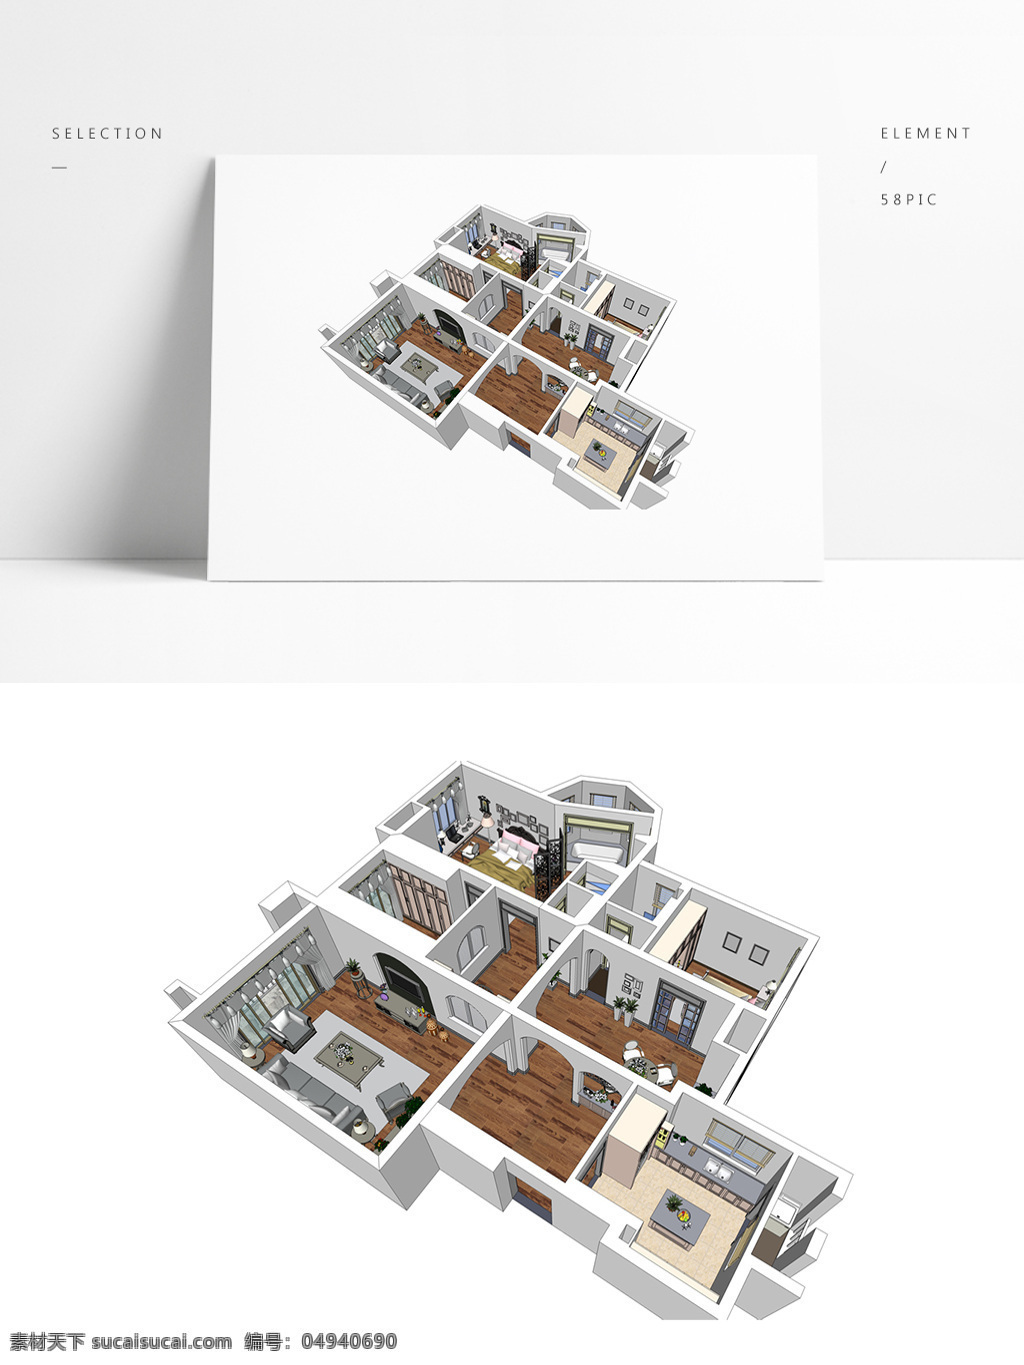 大平 层 户型 住宅 草图 大师 模型 室内空间设计 住宅室内设计 样板房 透视 3d模型 su模型 草图大师模型 家具模型 住宅设计 透视模型